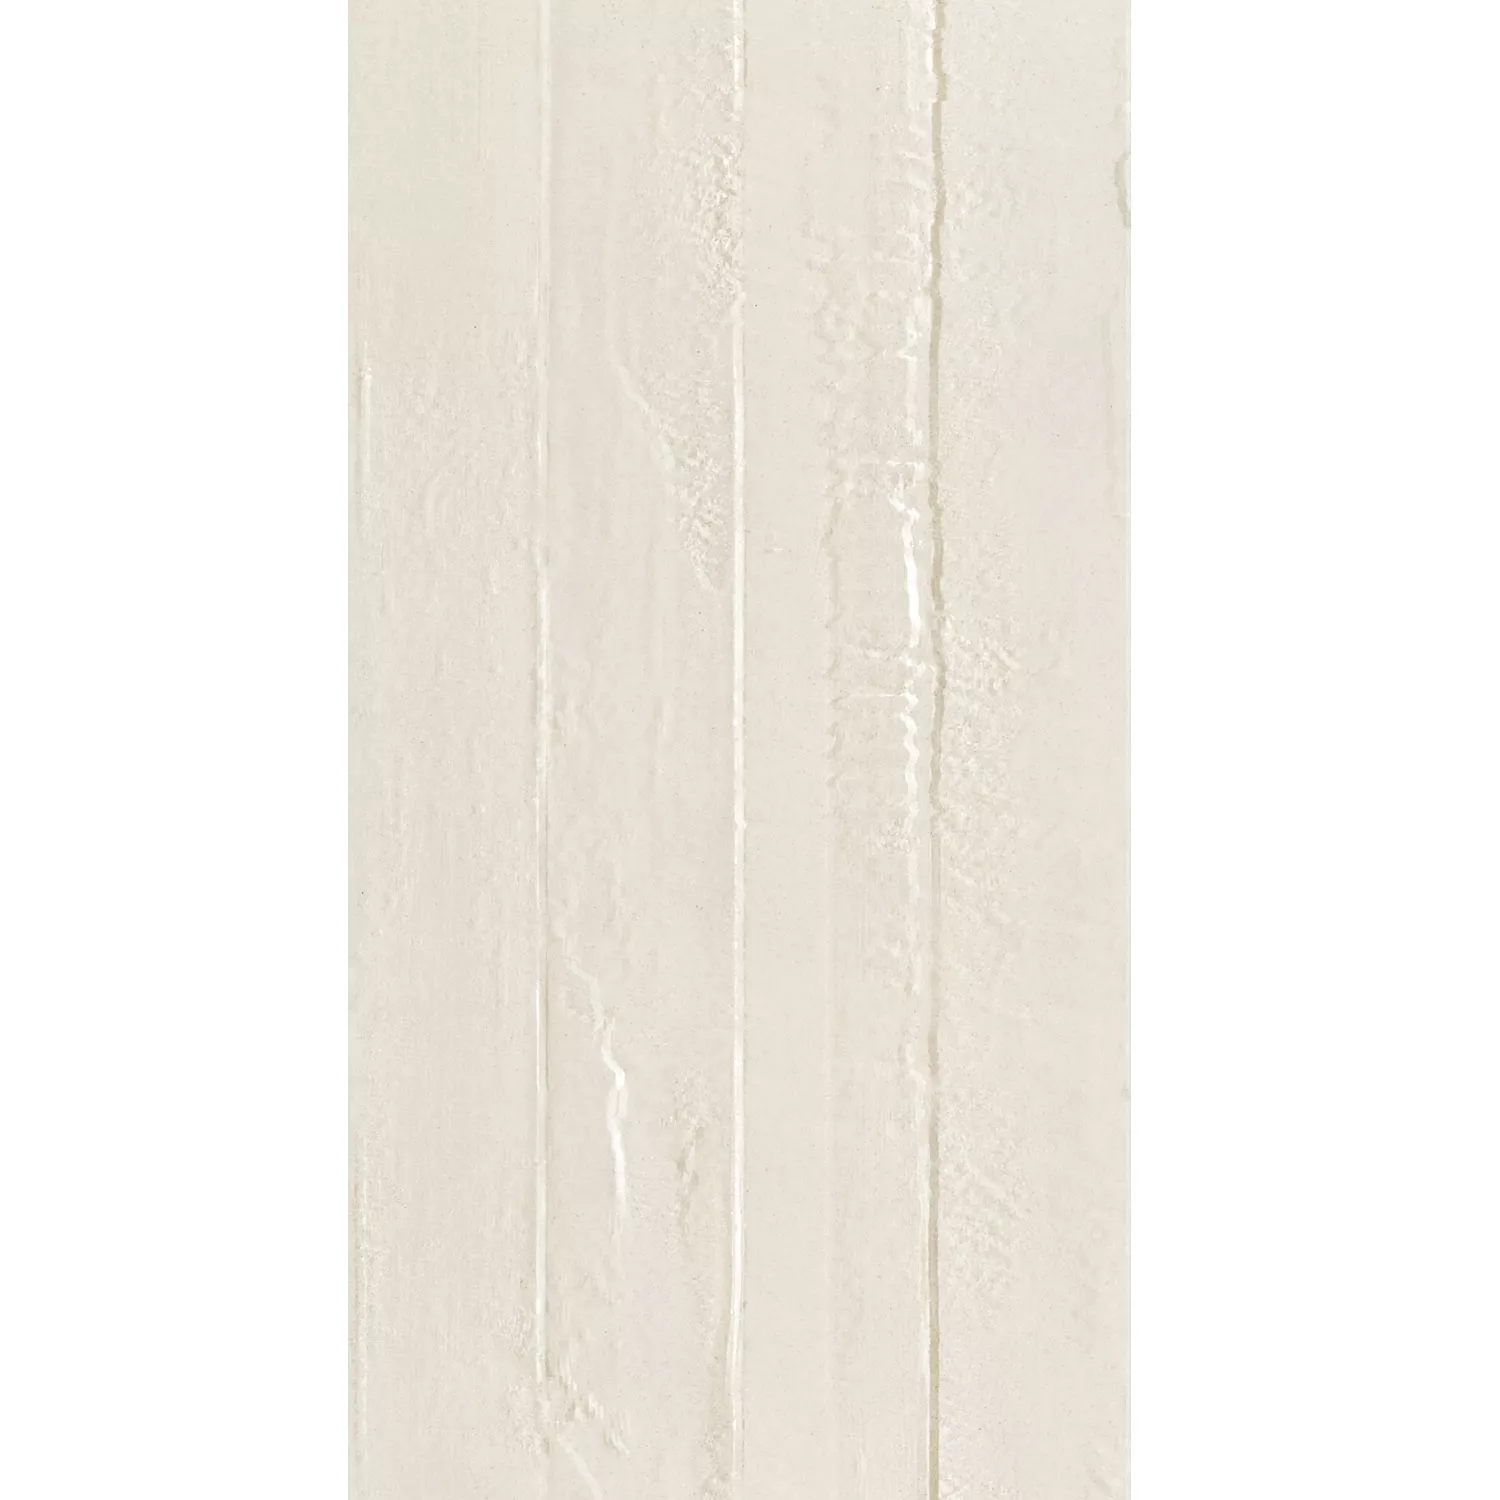 Muster Bodenfliese Steinoptik Lobetal Ivory 45x90cm